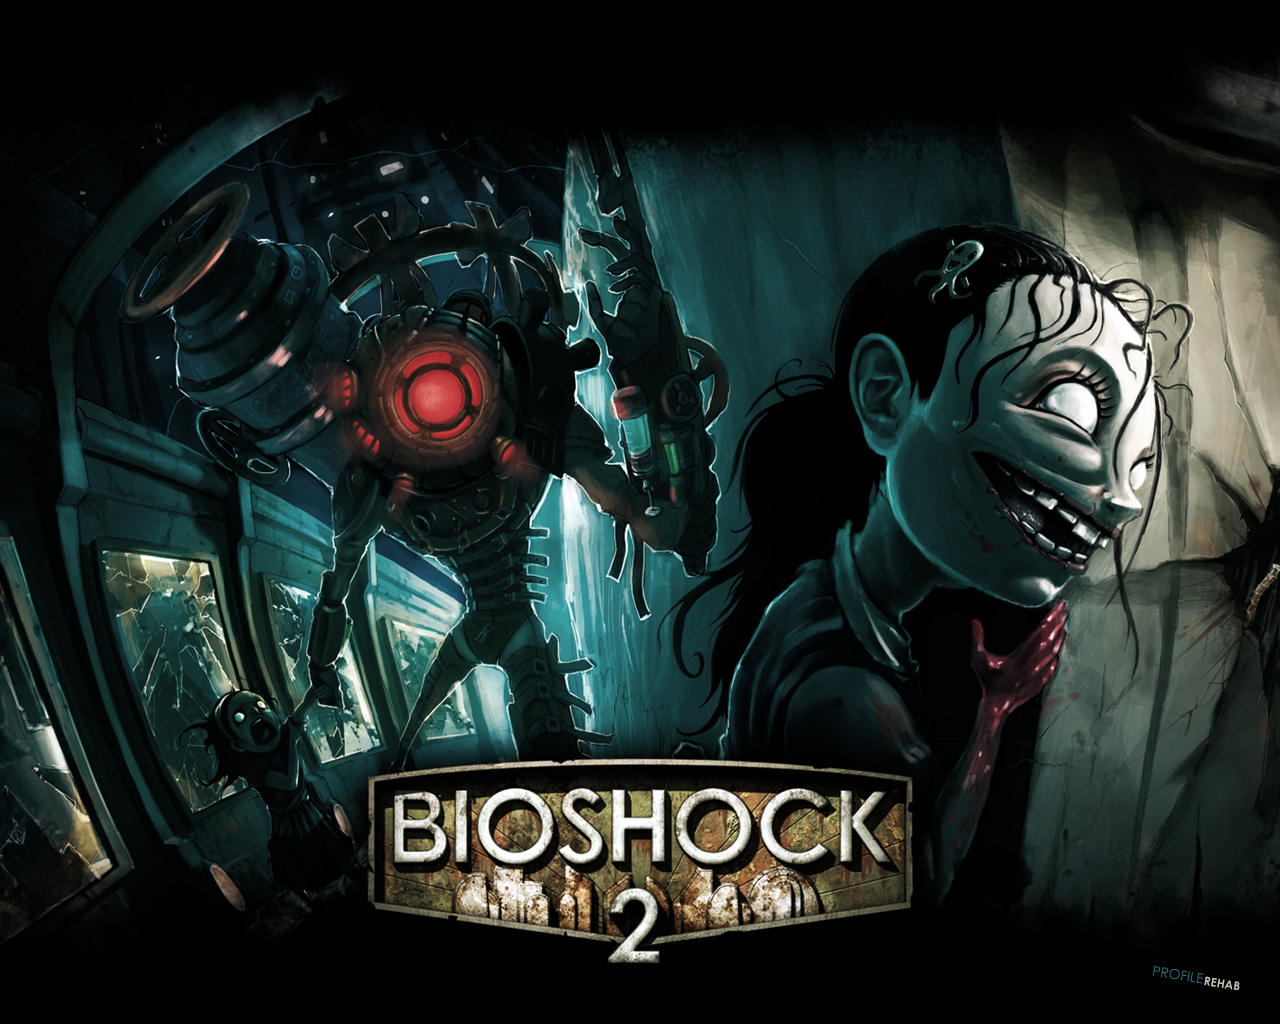 Bioshock 2 Release Date , HD Wallpaper & Backgrounds